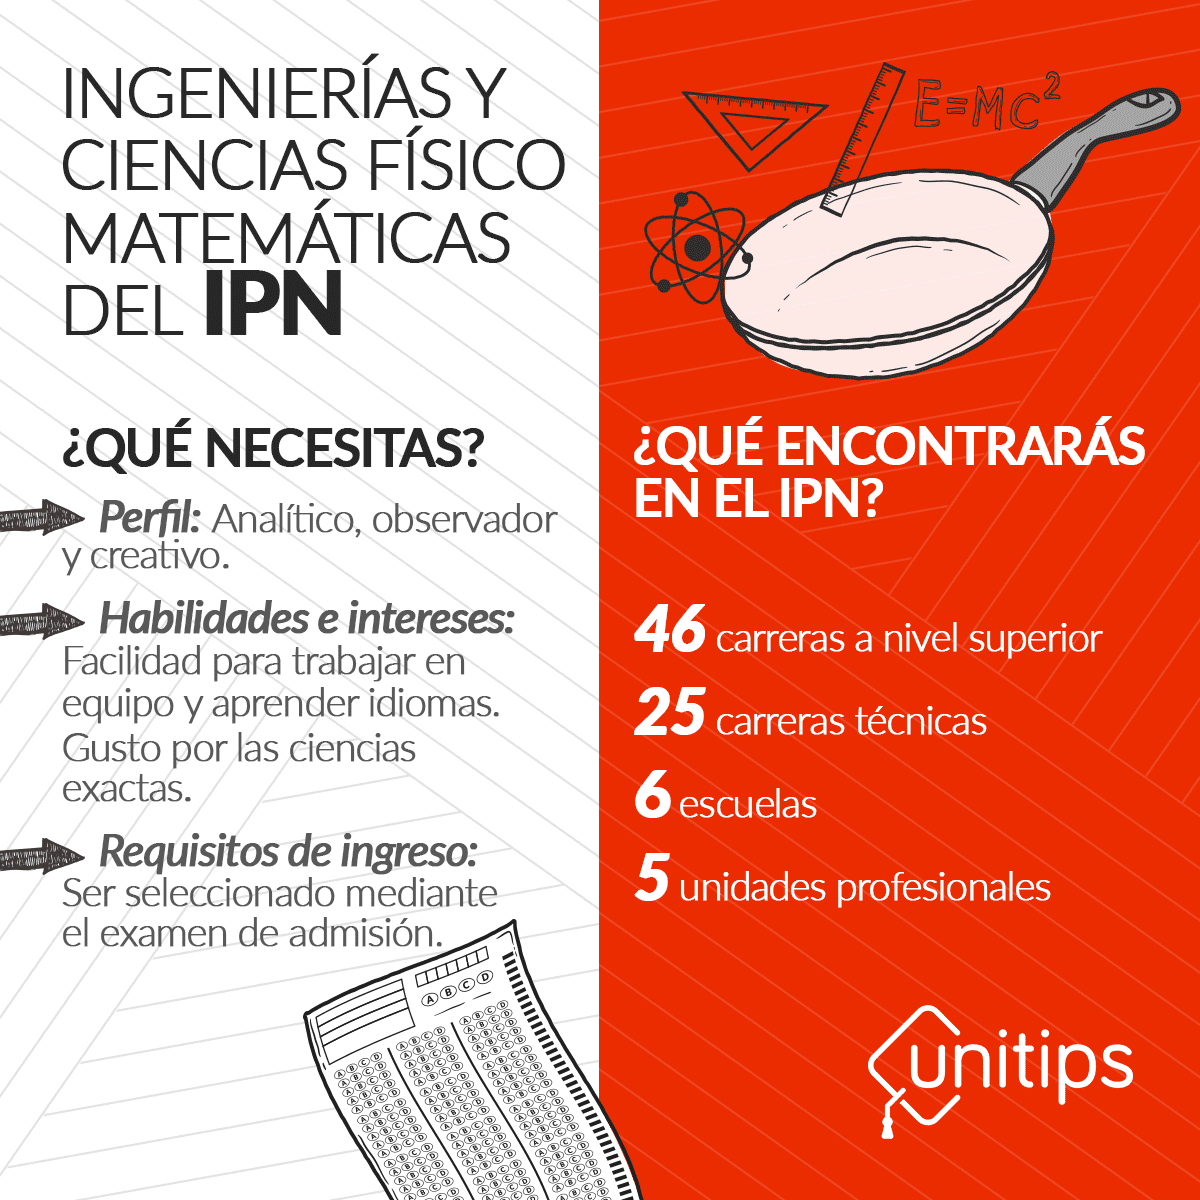 I_Internta_Ingenierías-y-Ciencias-Físico---Matemáticas-del-IPN